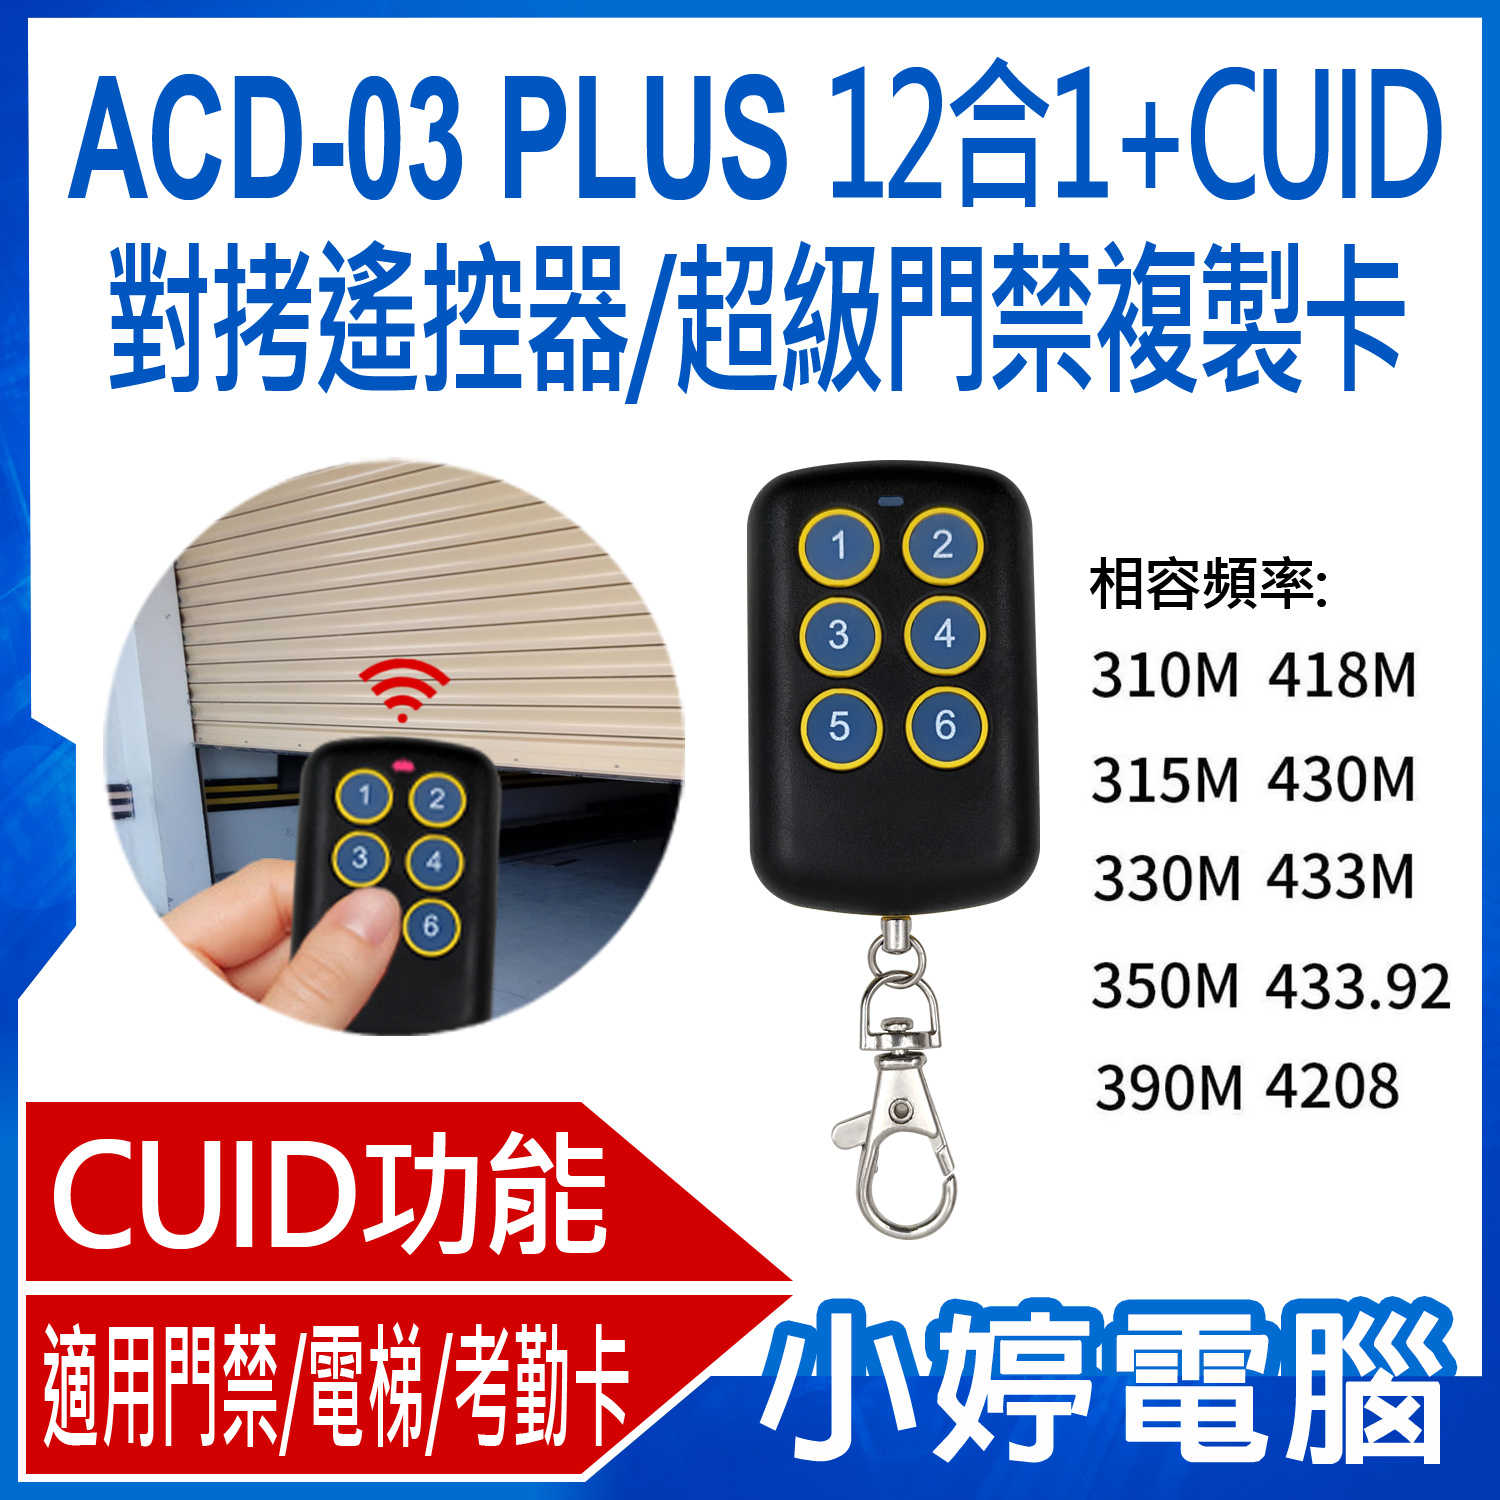 【小婷電腦】ACD-03 PLUS 12合1+CUID對拷遙控器/超級門禁複製卡 鐵捲門遙控器拷貝 附帶CUID門禁拷貝